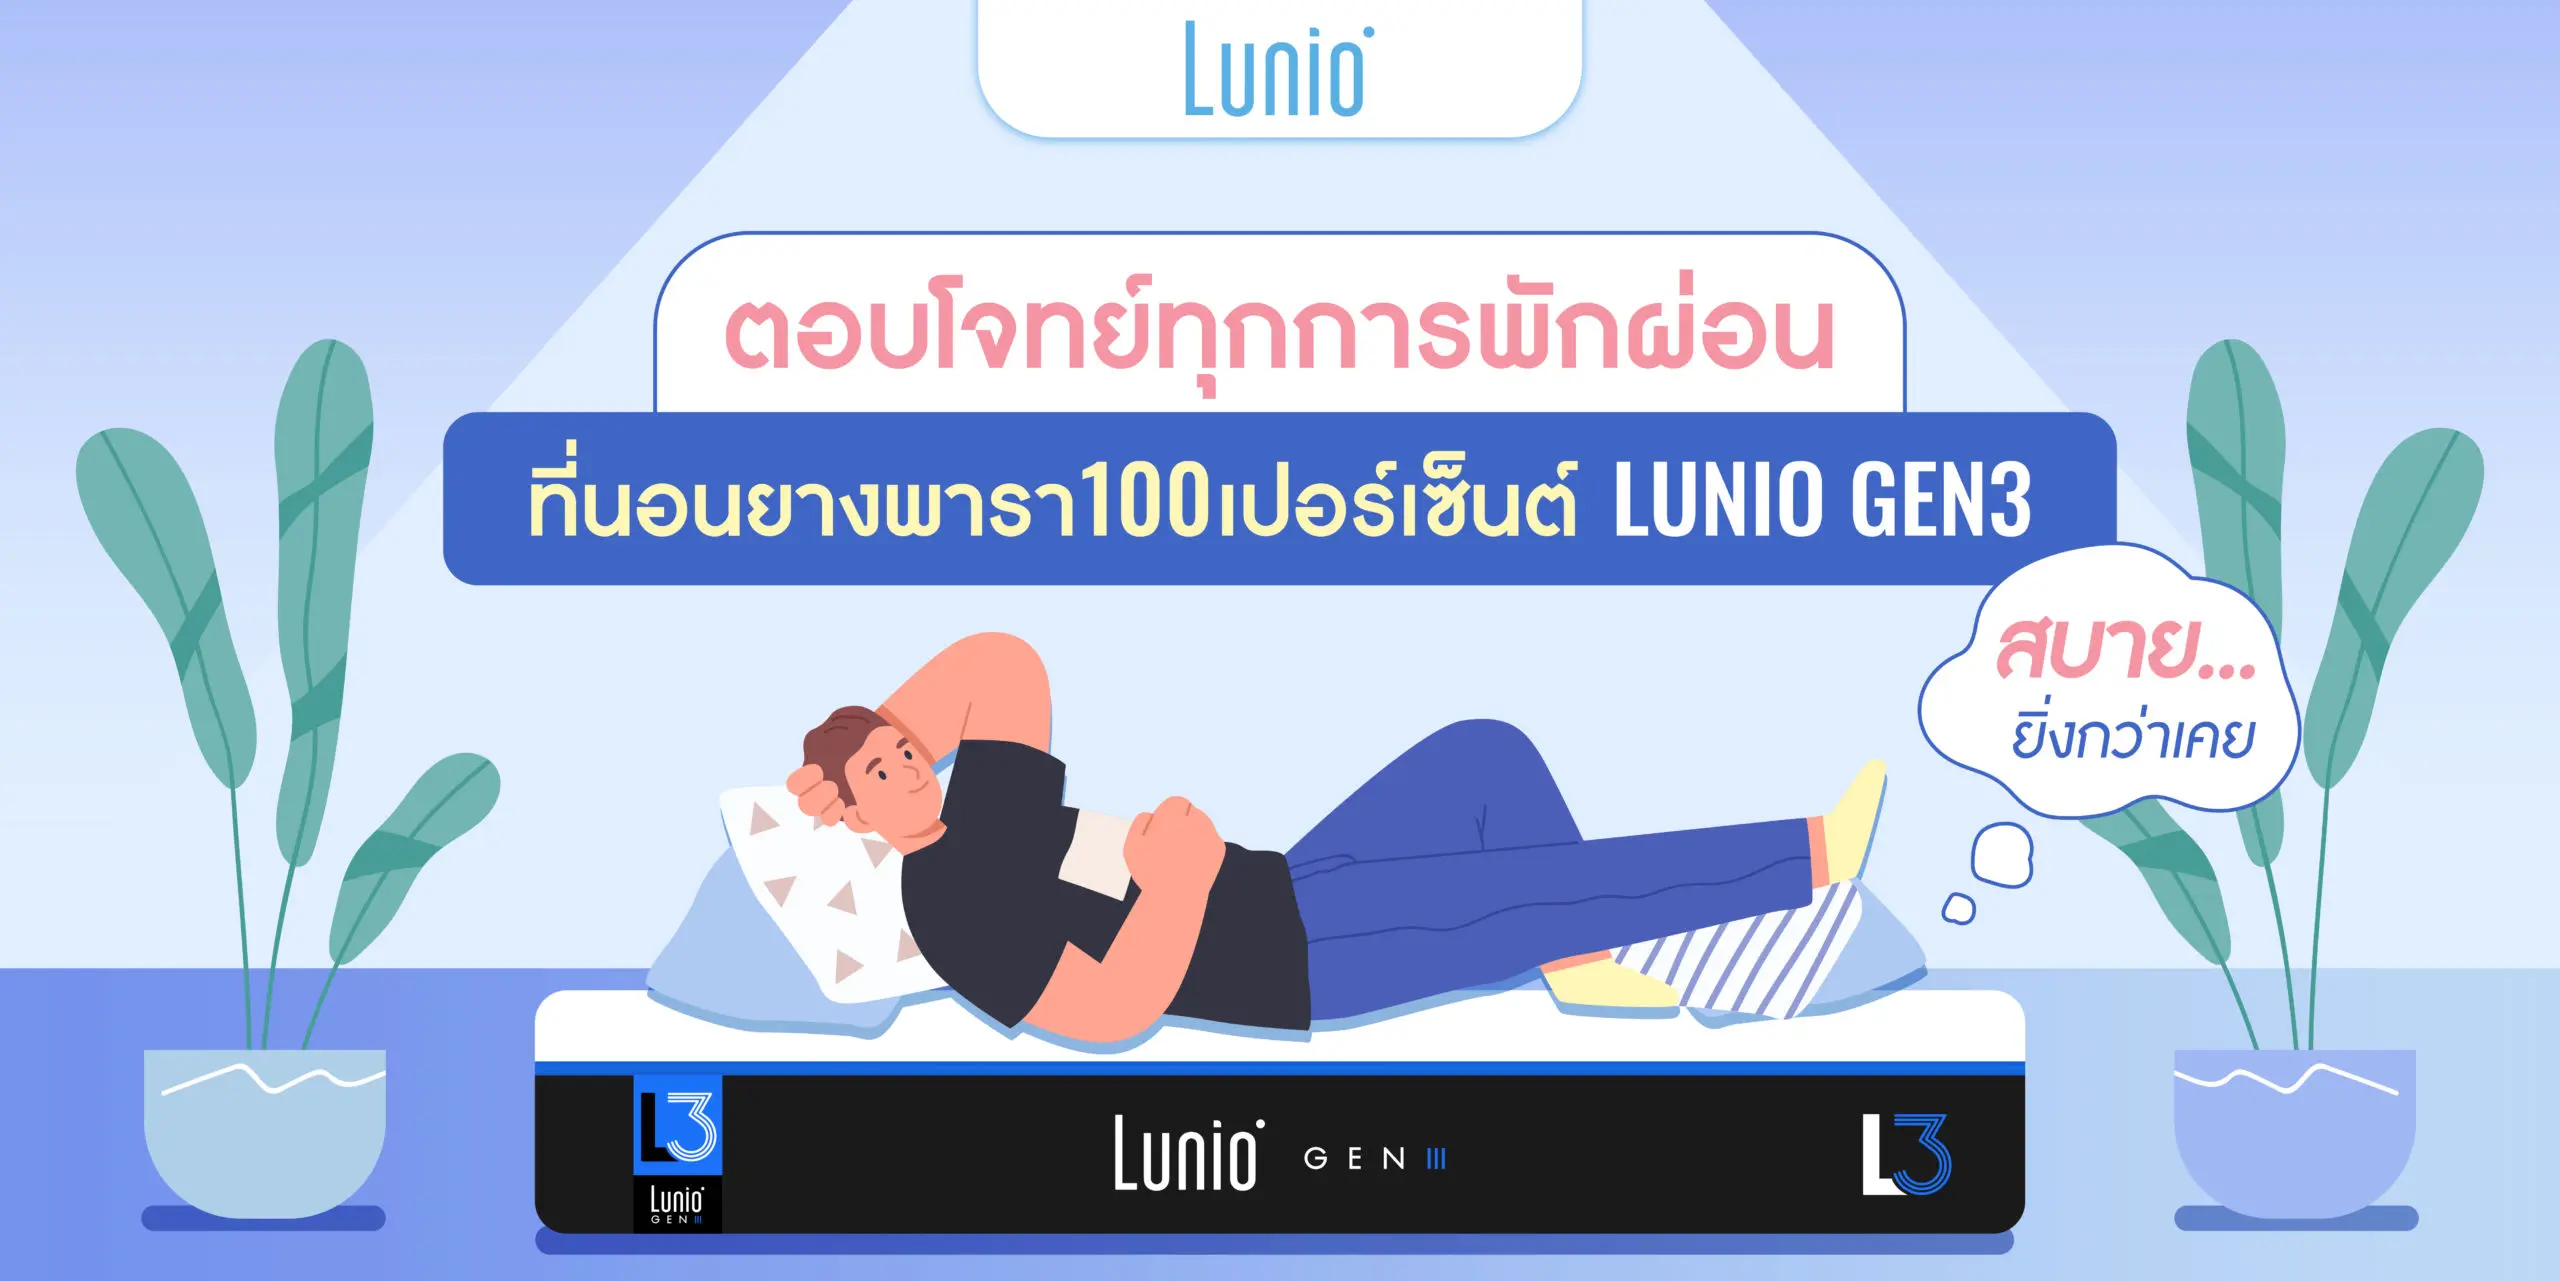 ที่นอนยางพารา 100 % Lunio Gen 3 ตอบโจทย์ทุกการพักผ่อน